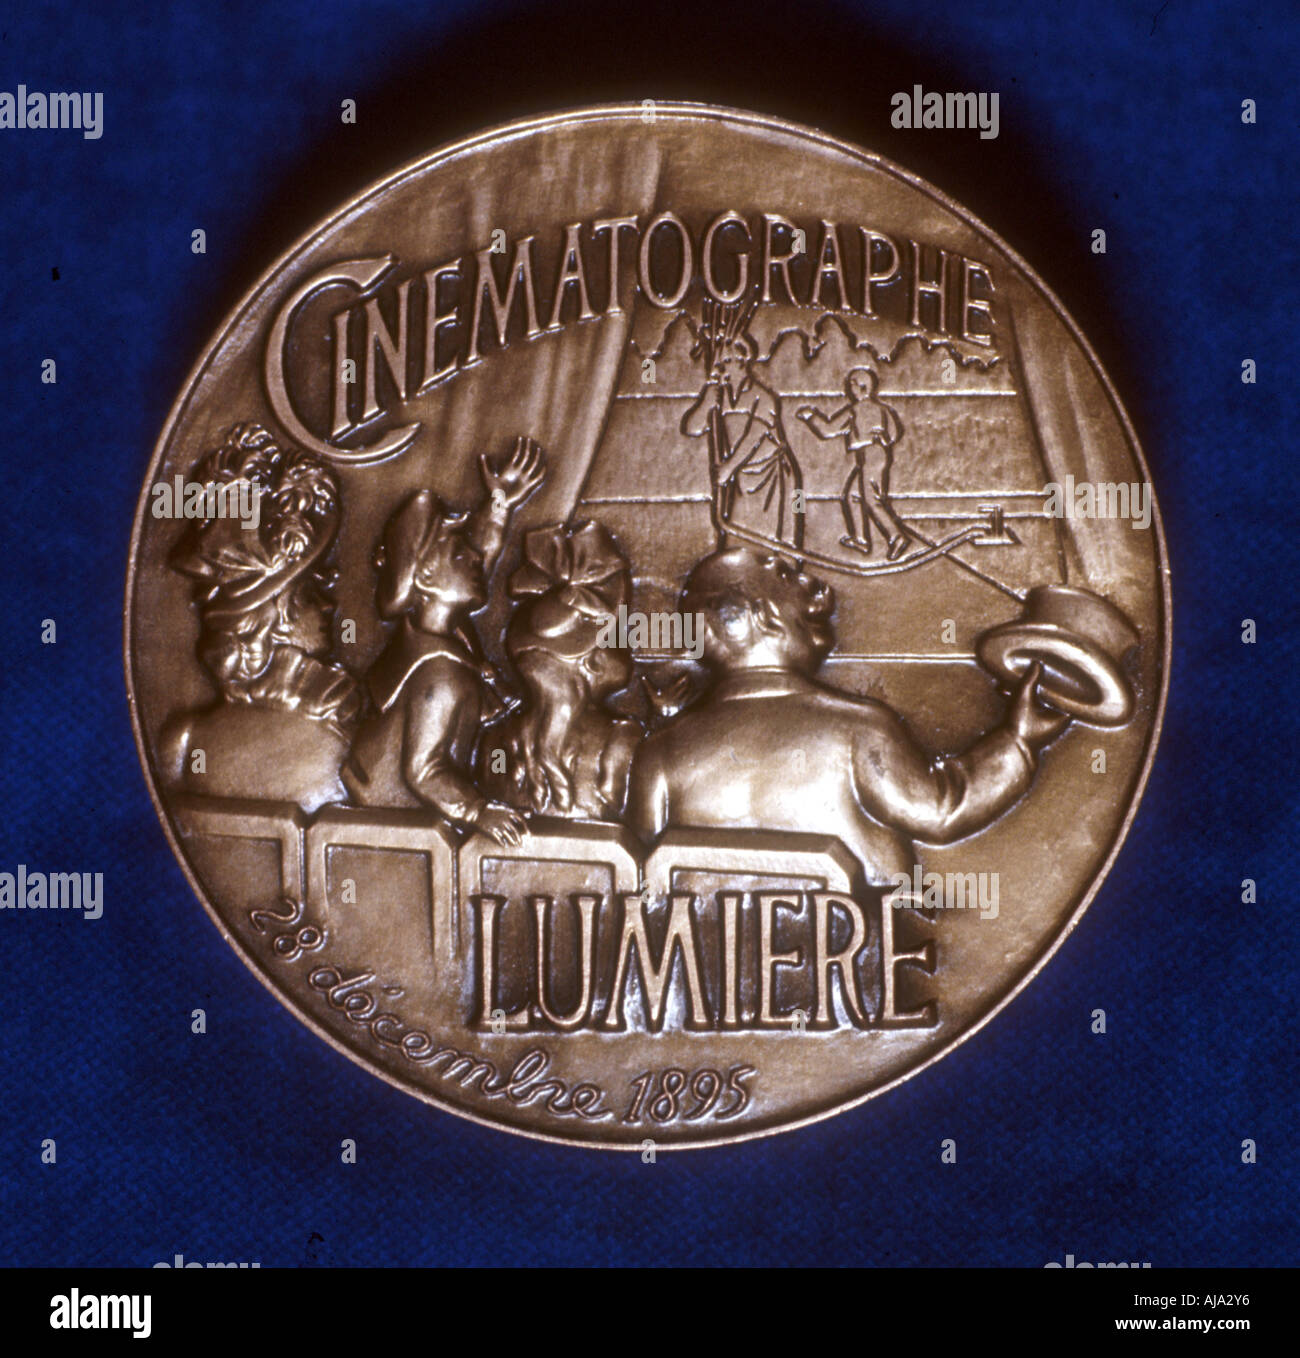 Revers de médaille commémorant 50 années de la cinématographie par le frères Lumière, 1945. Artiste : Inconnu Banque D'Images